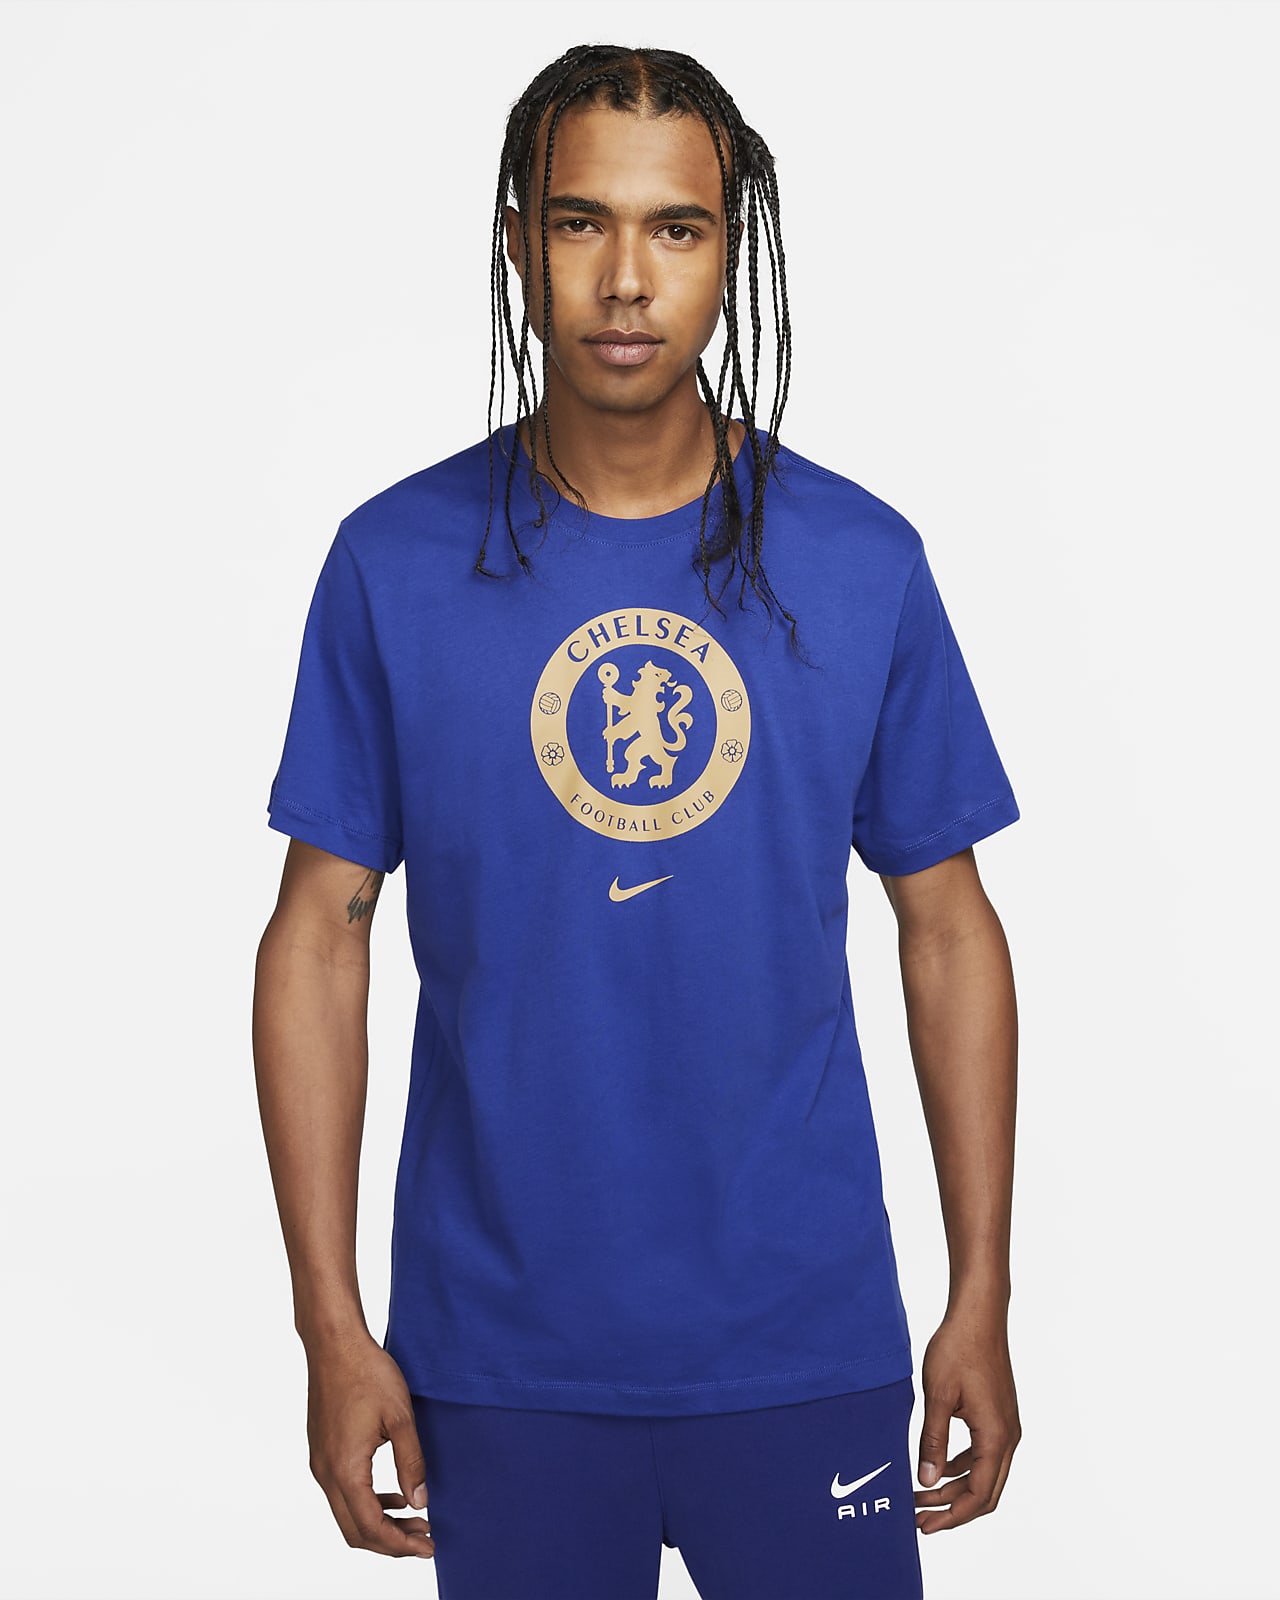 Chelsea FC Men's Soccer T-Shirt. Nike.com